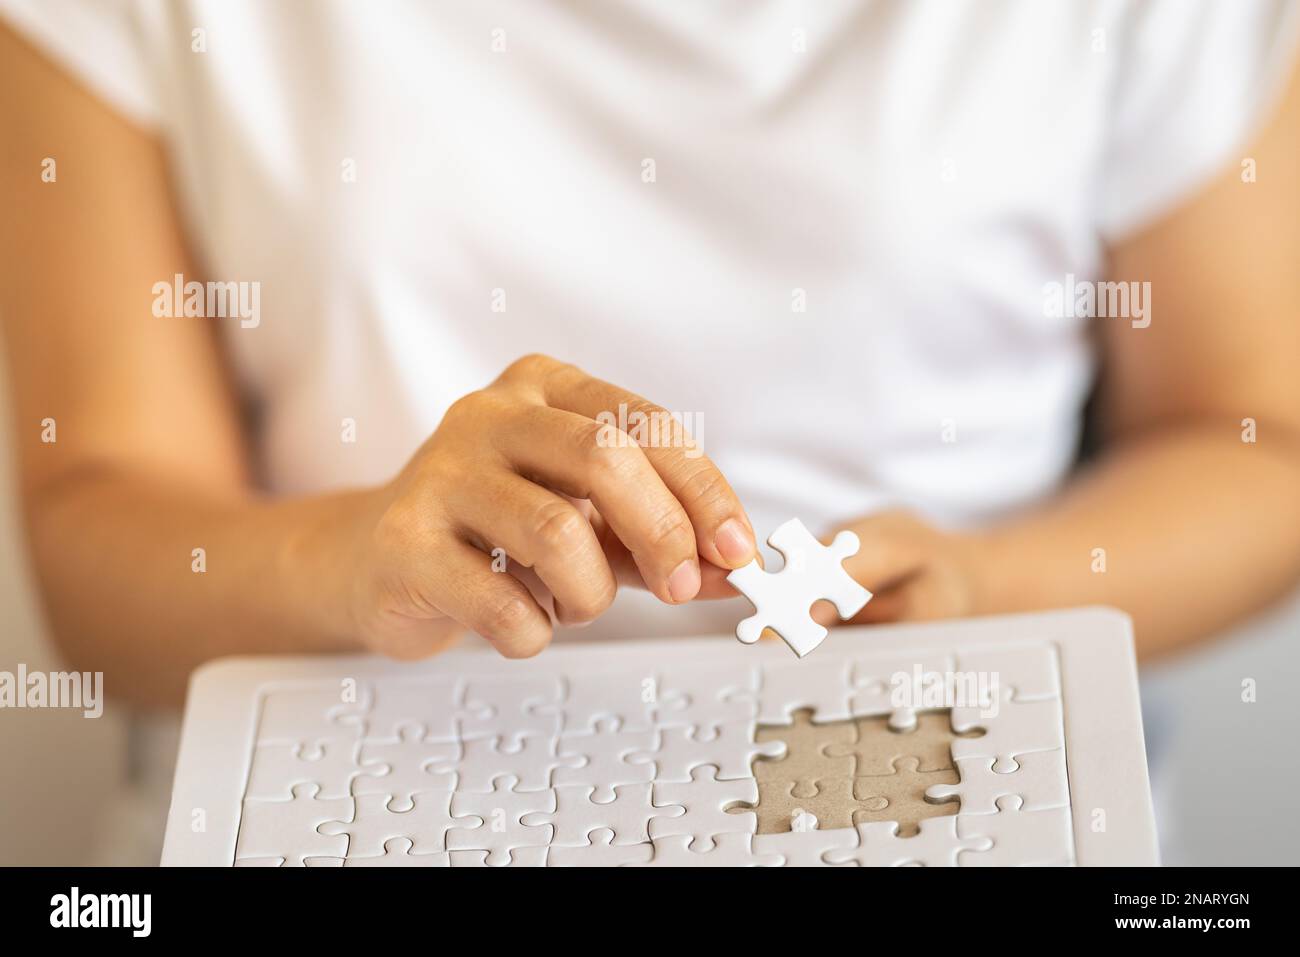 Nahaufnahme der Hand einer Frau, die ein Puzzle aus weißem Papier hält, und die Hand nach unten legt, um das Puzzle zu lösen. Verwendung als Business-Lösungen und Strategiekonzept. Stockfoto